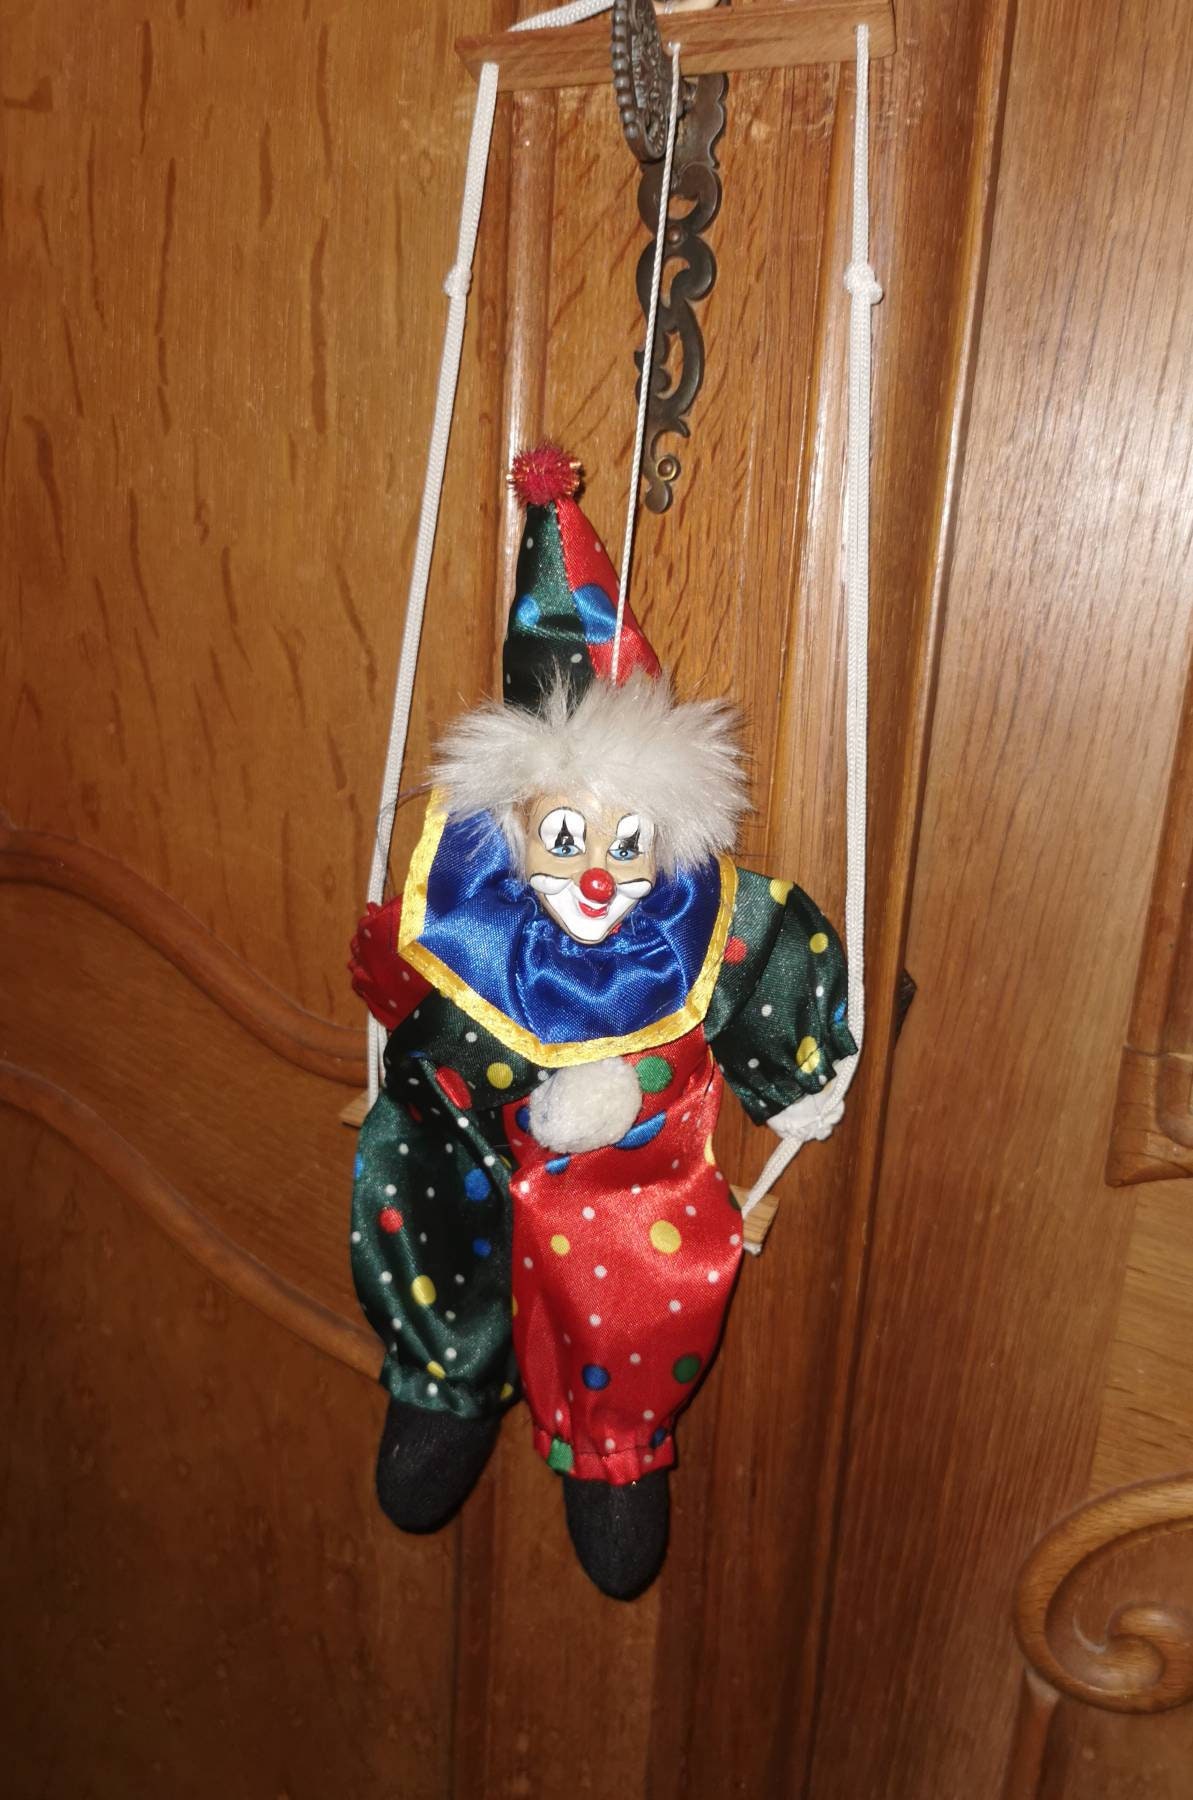 Skeleton Clown on the swing, Hanging figure for horror gardens